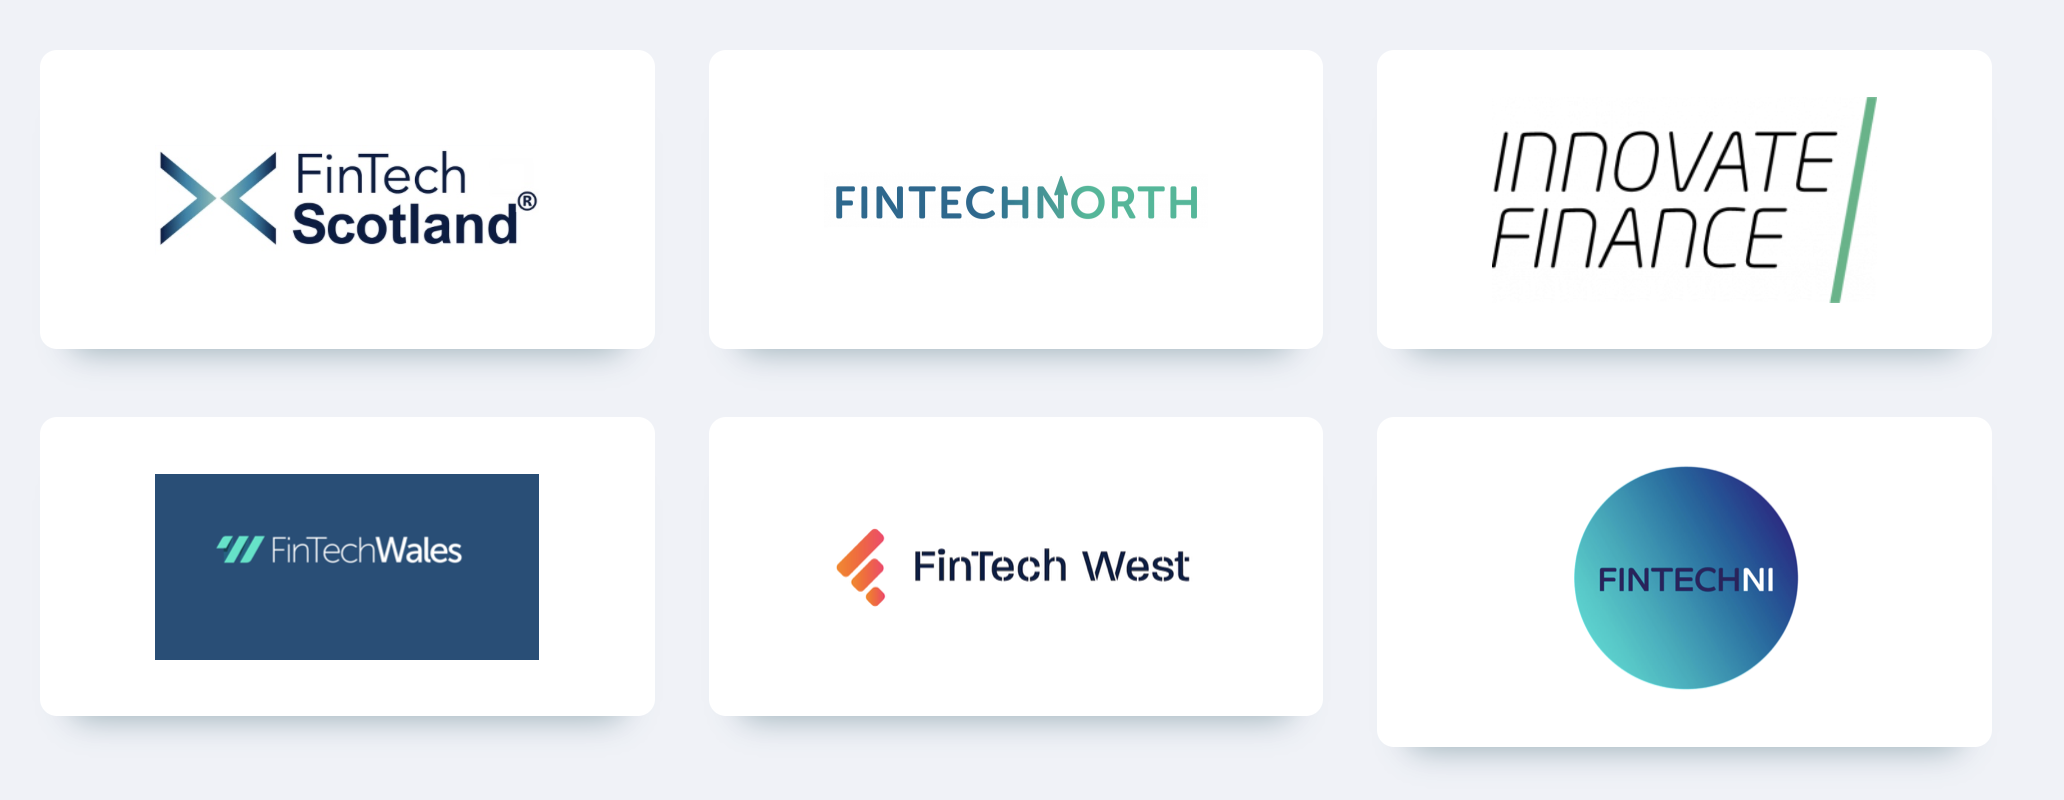 Fintech National Network logo